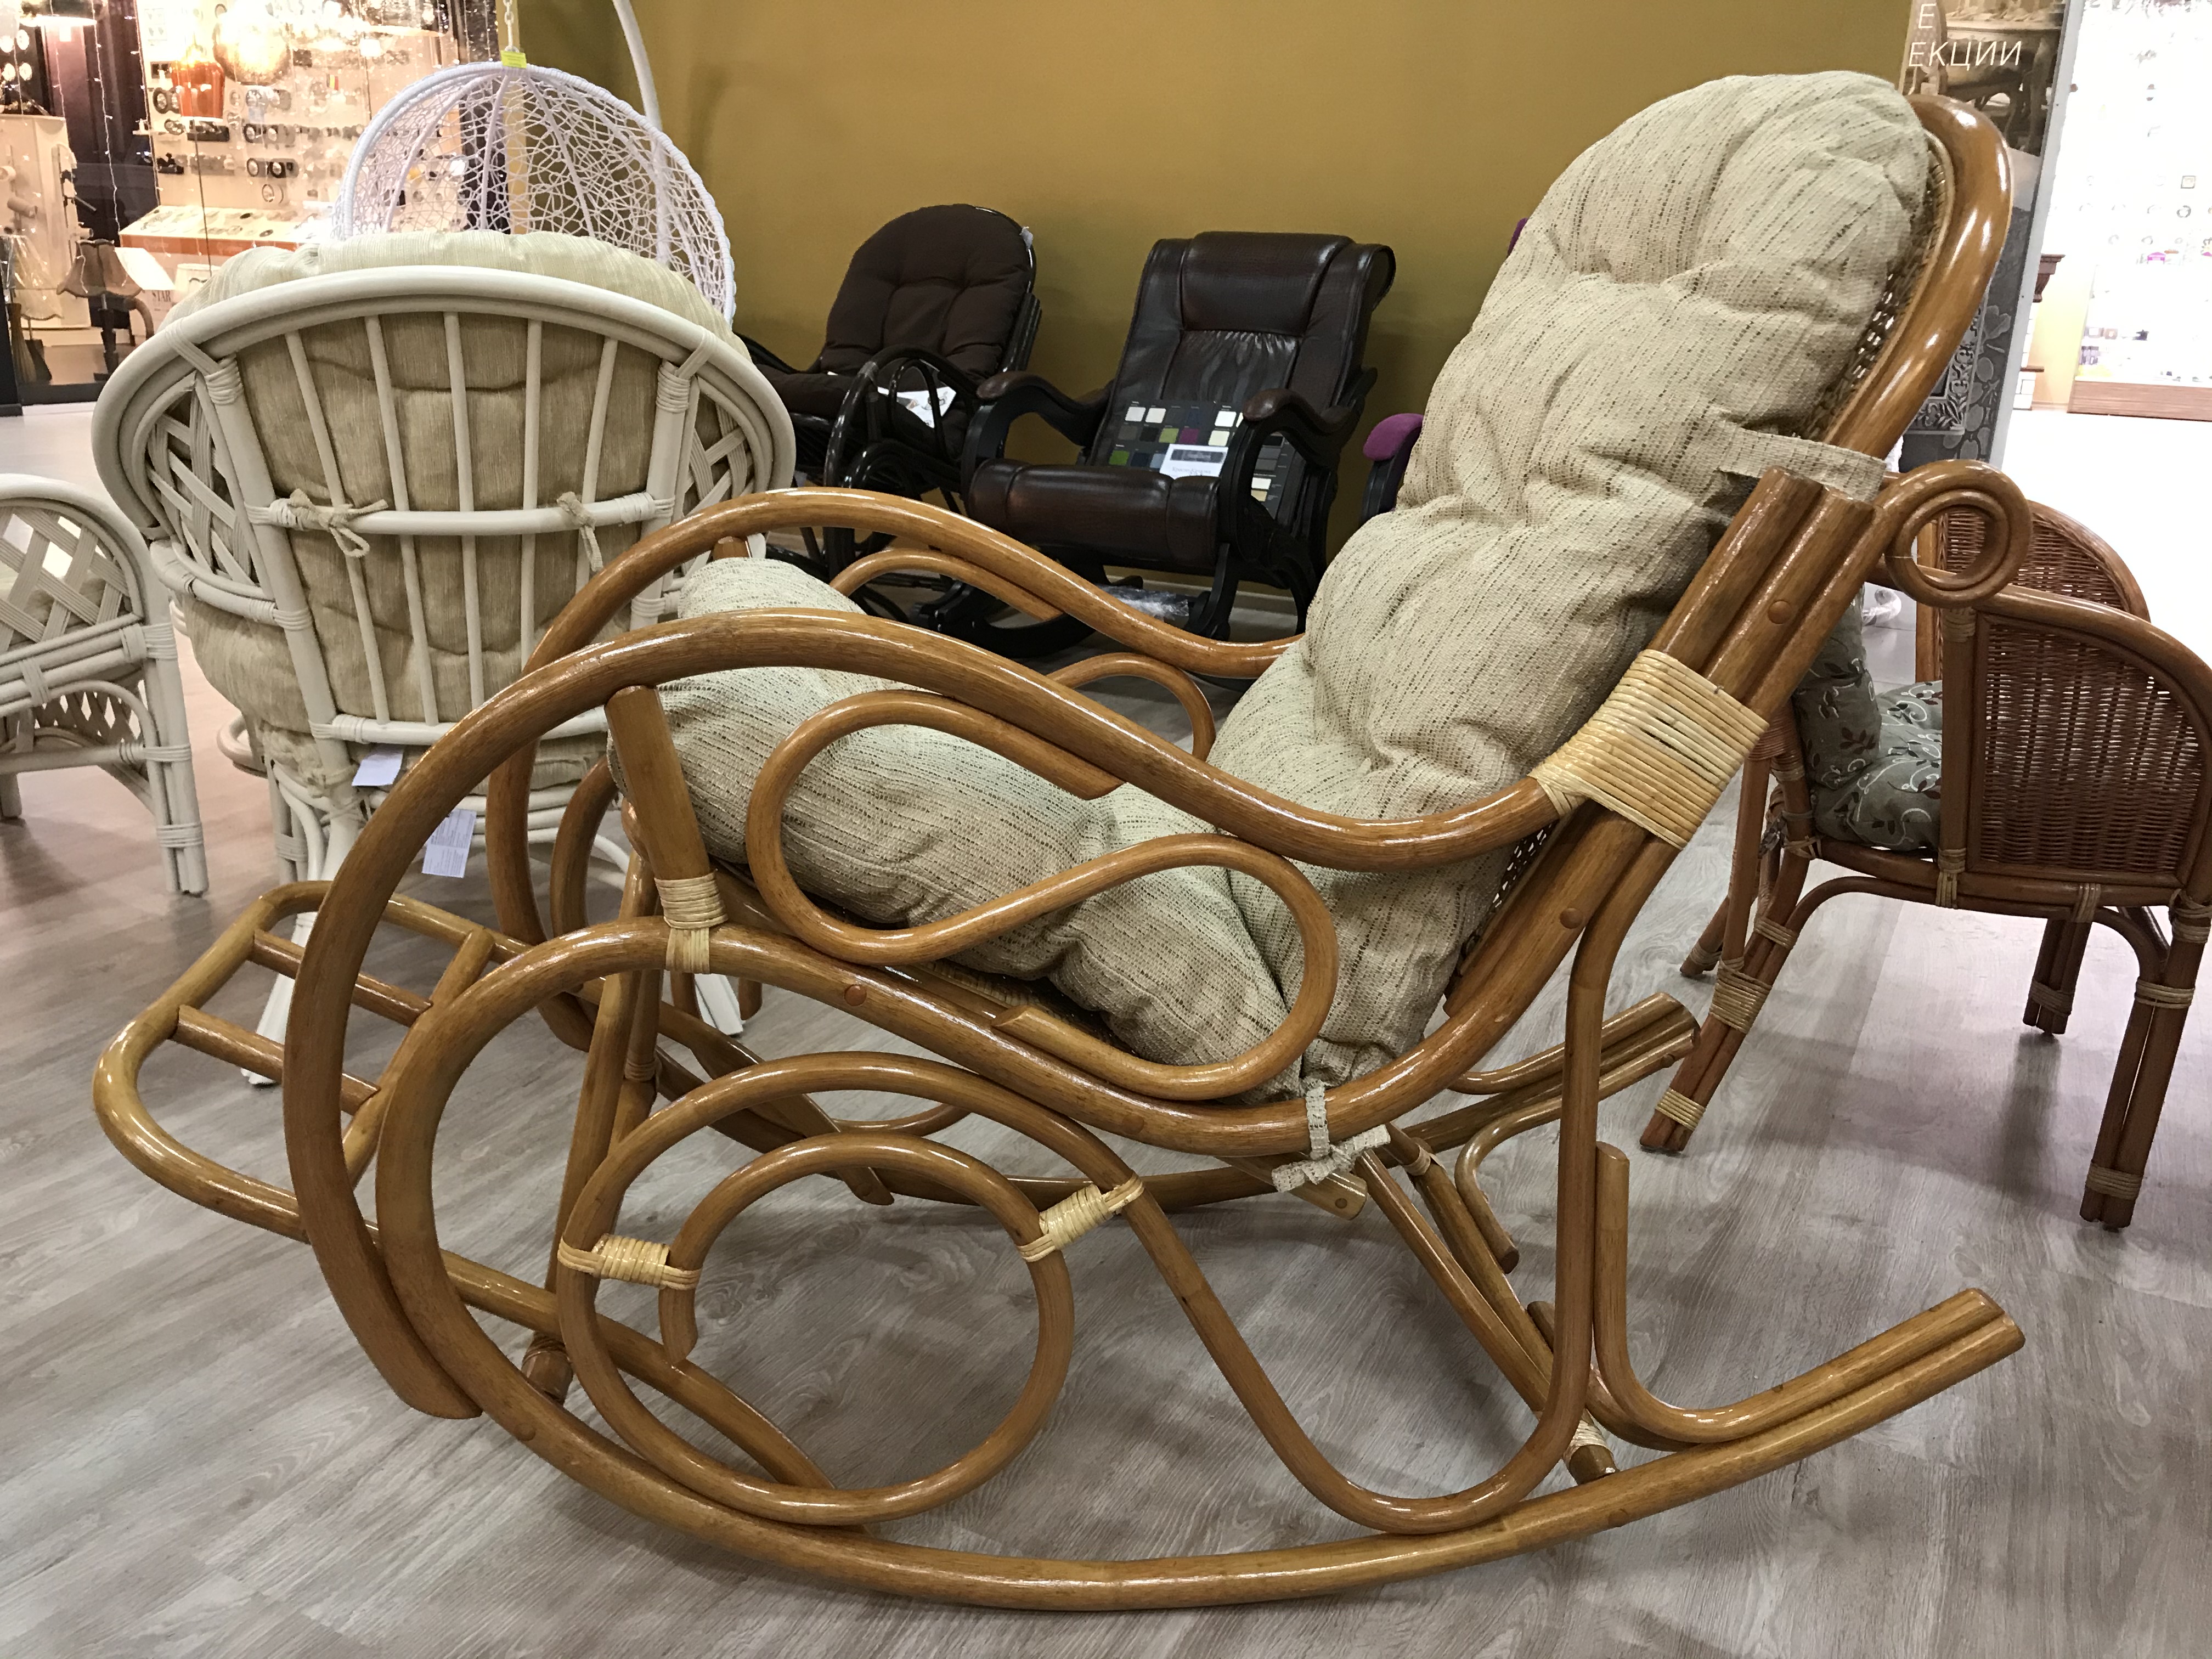 Кресло Качалки В Магазинах Новосибирска Купить